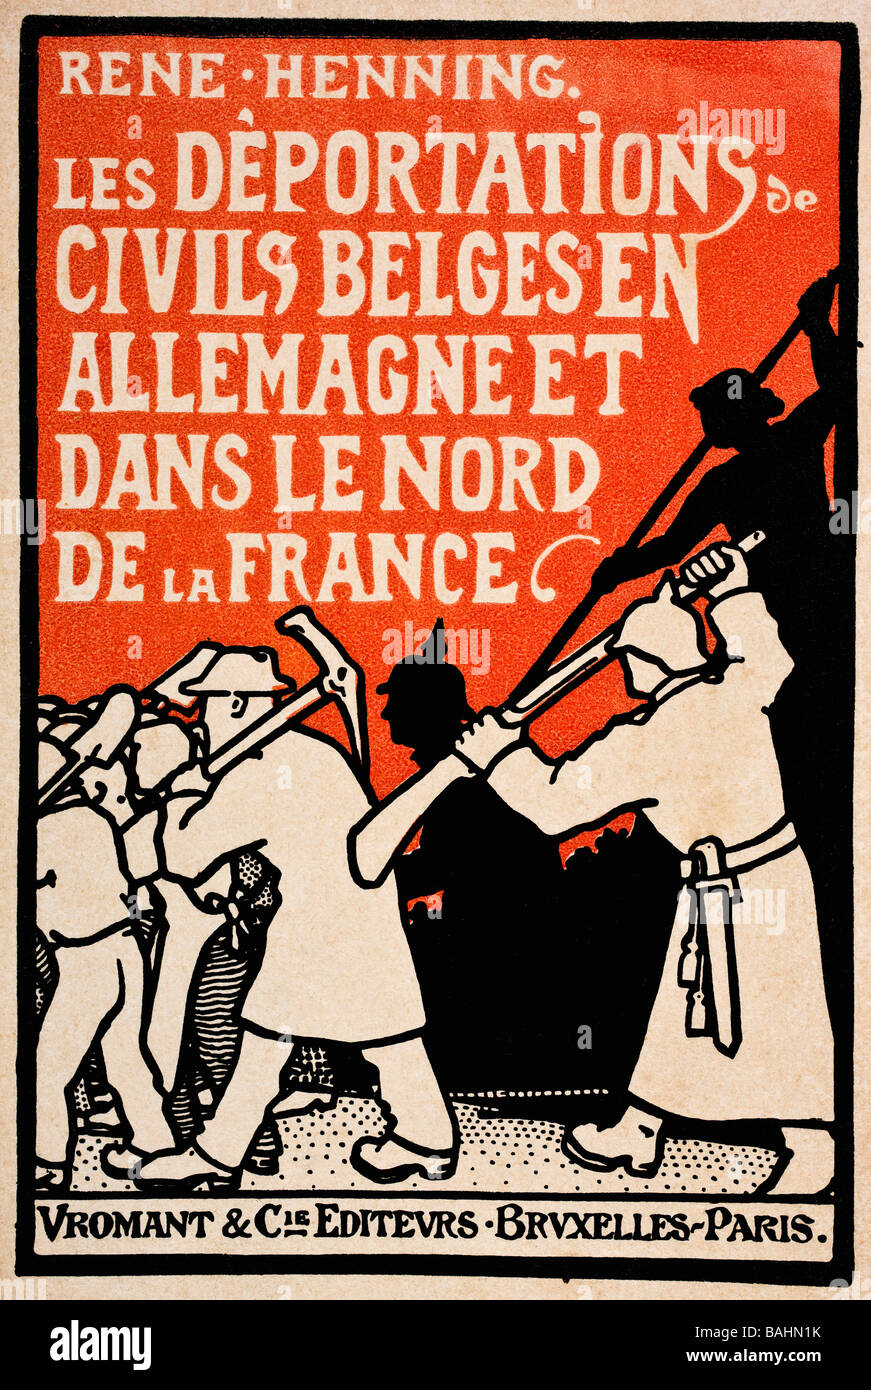 Portada de libro de 1919, Les deportations de Civils Belges en Allemagne et Dans le Nord de la France por Rene Henning. Foto de stock